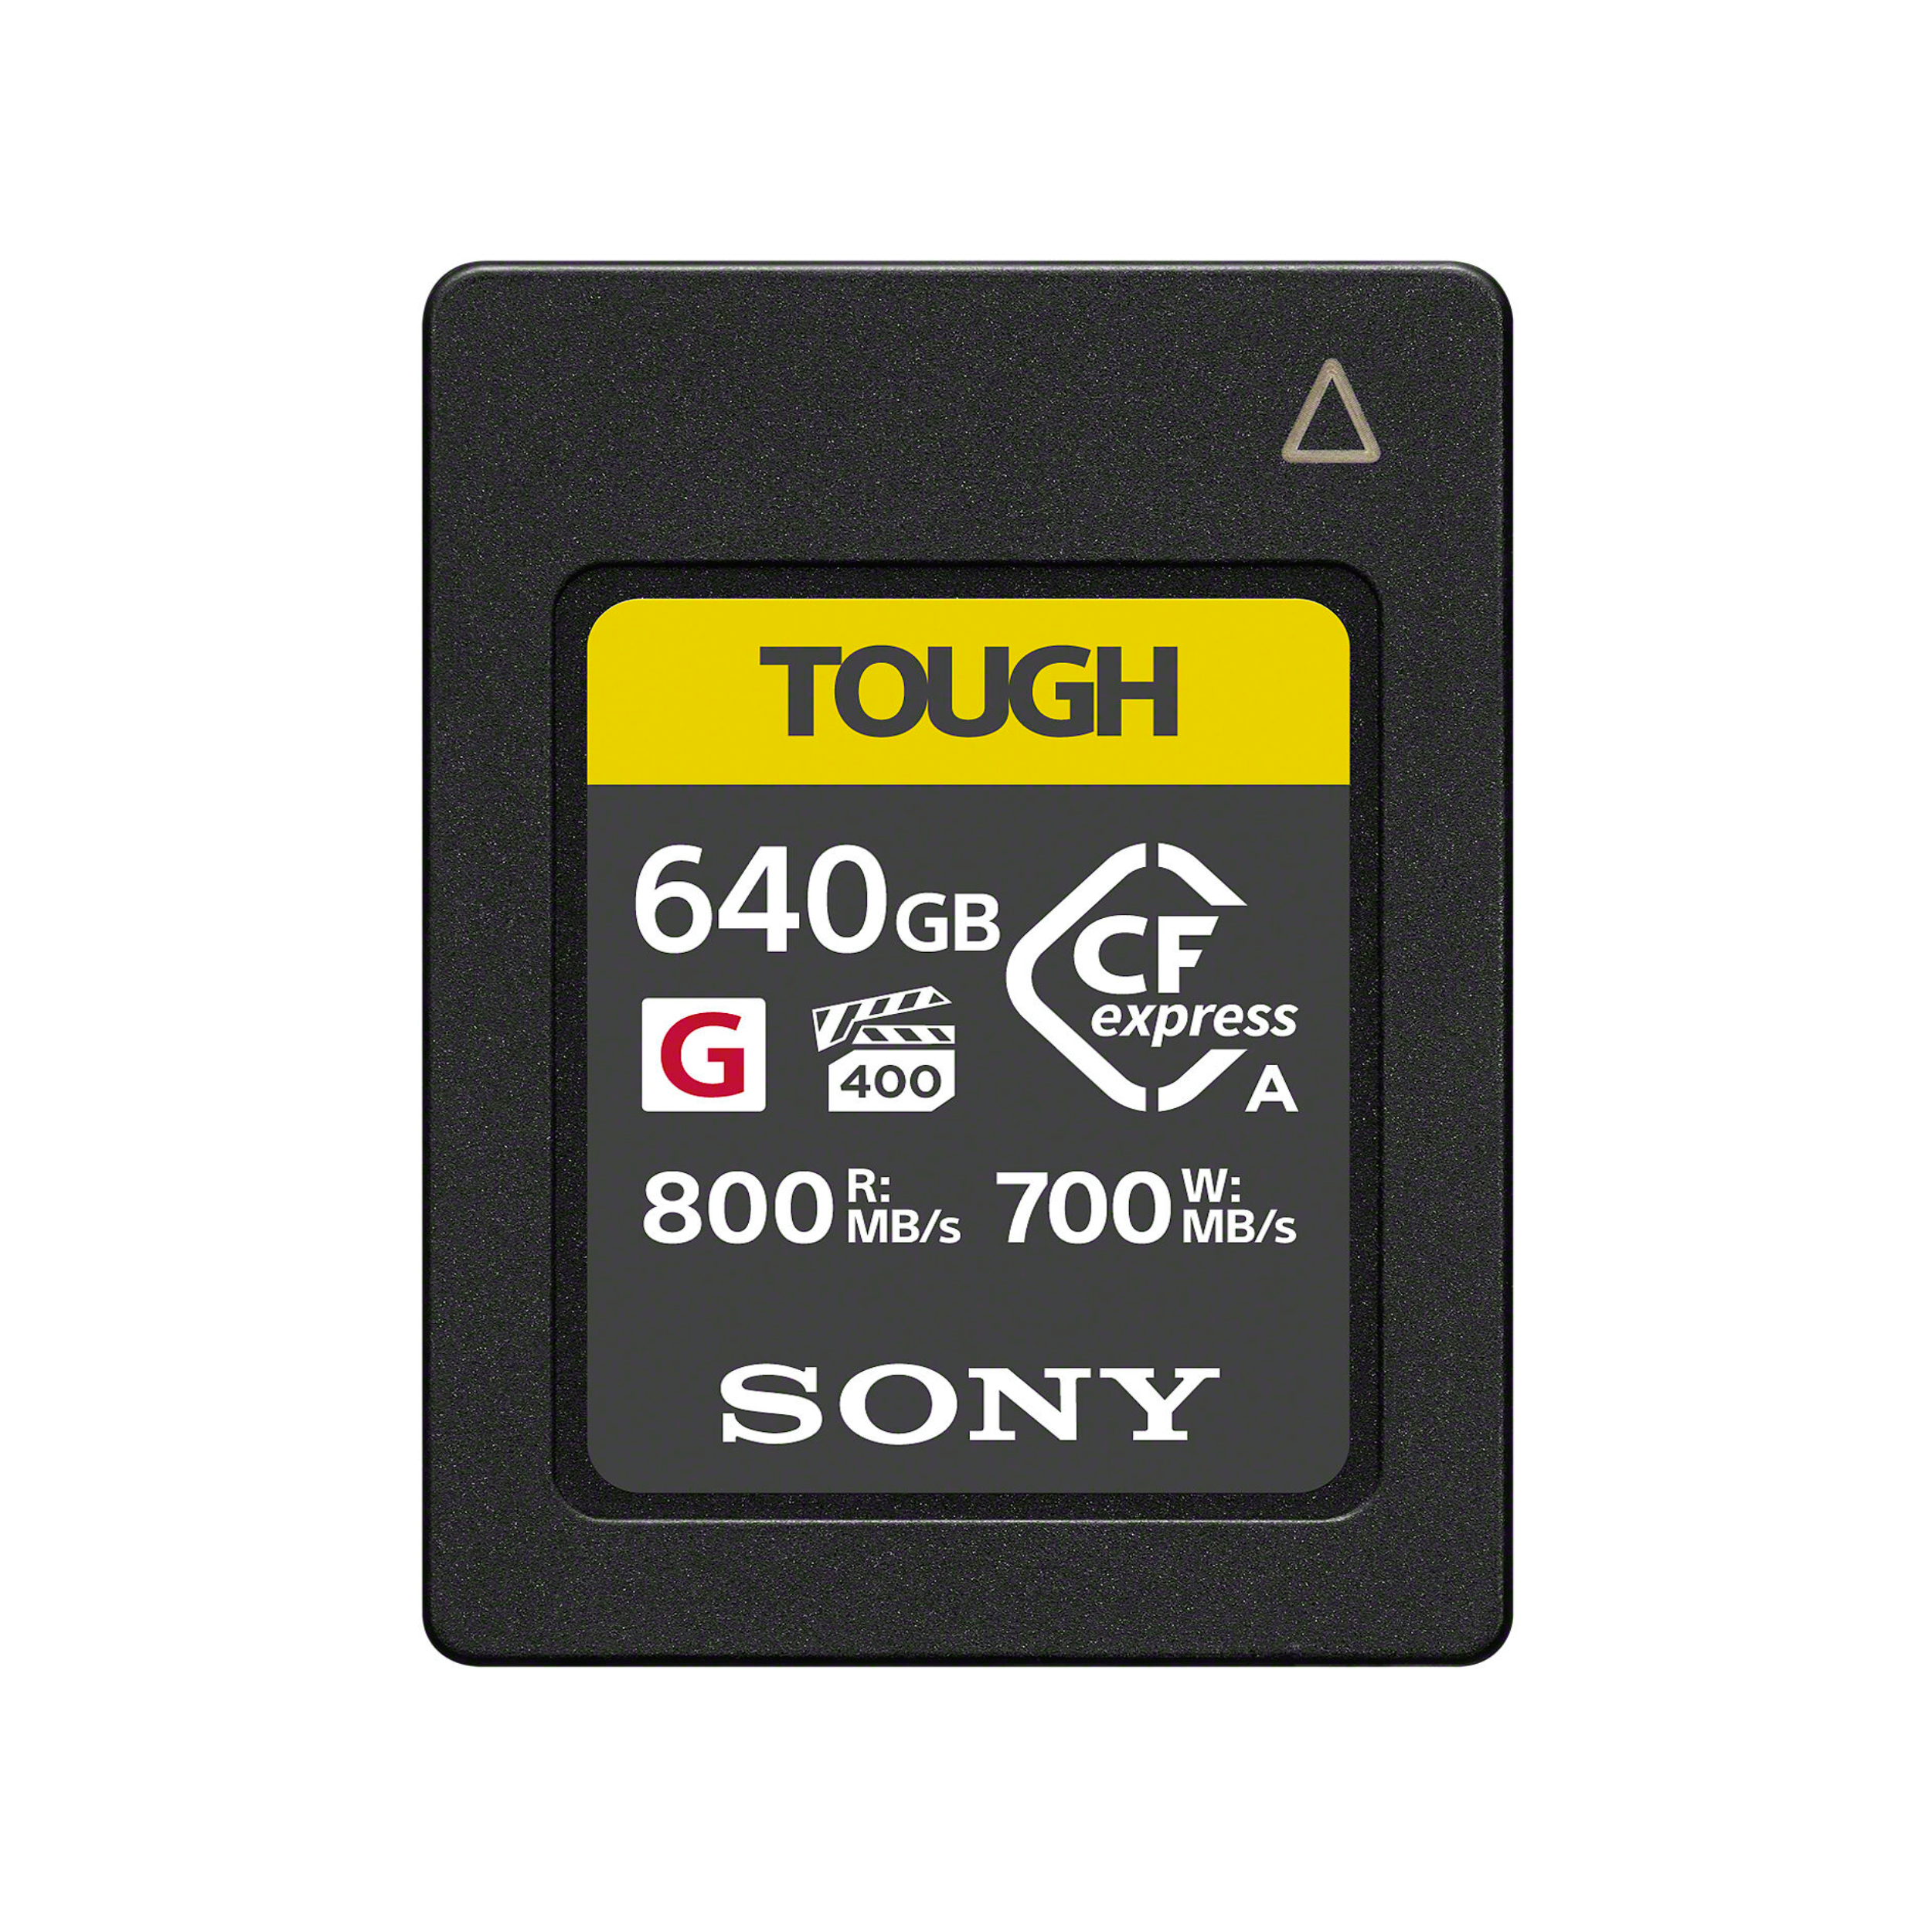 Sony Cfexpress Type A Carte mémoire 640 Go